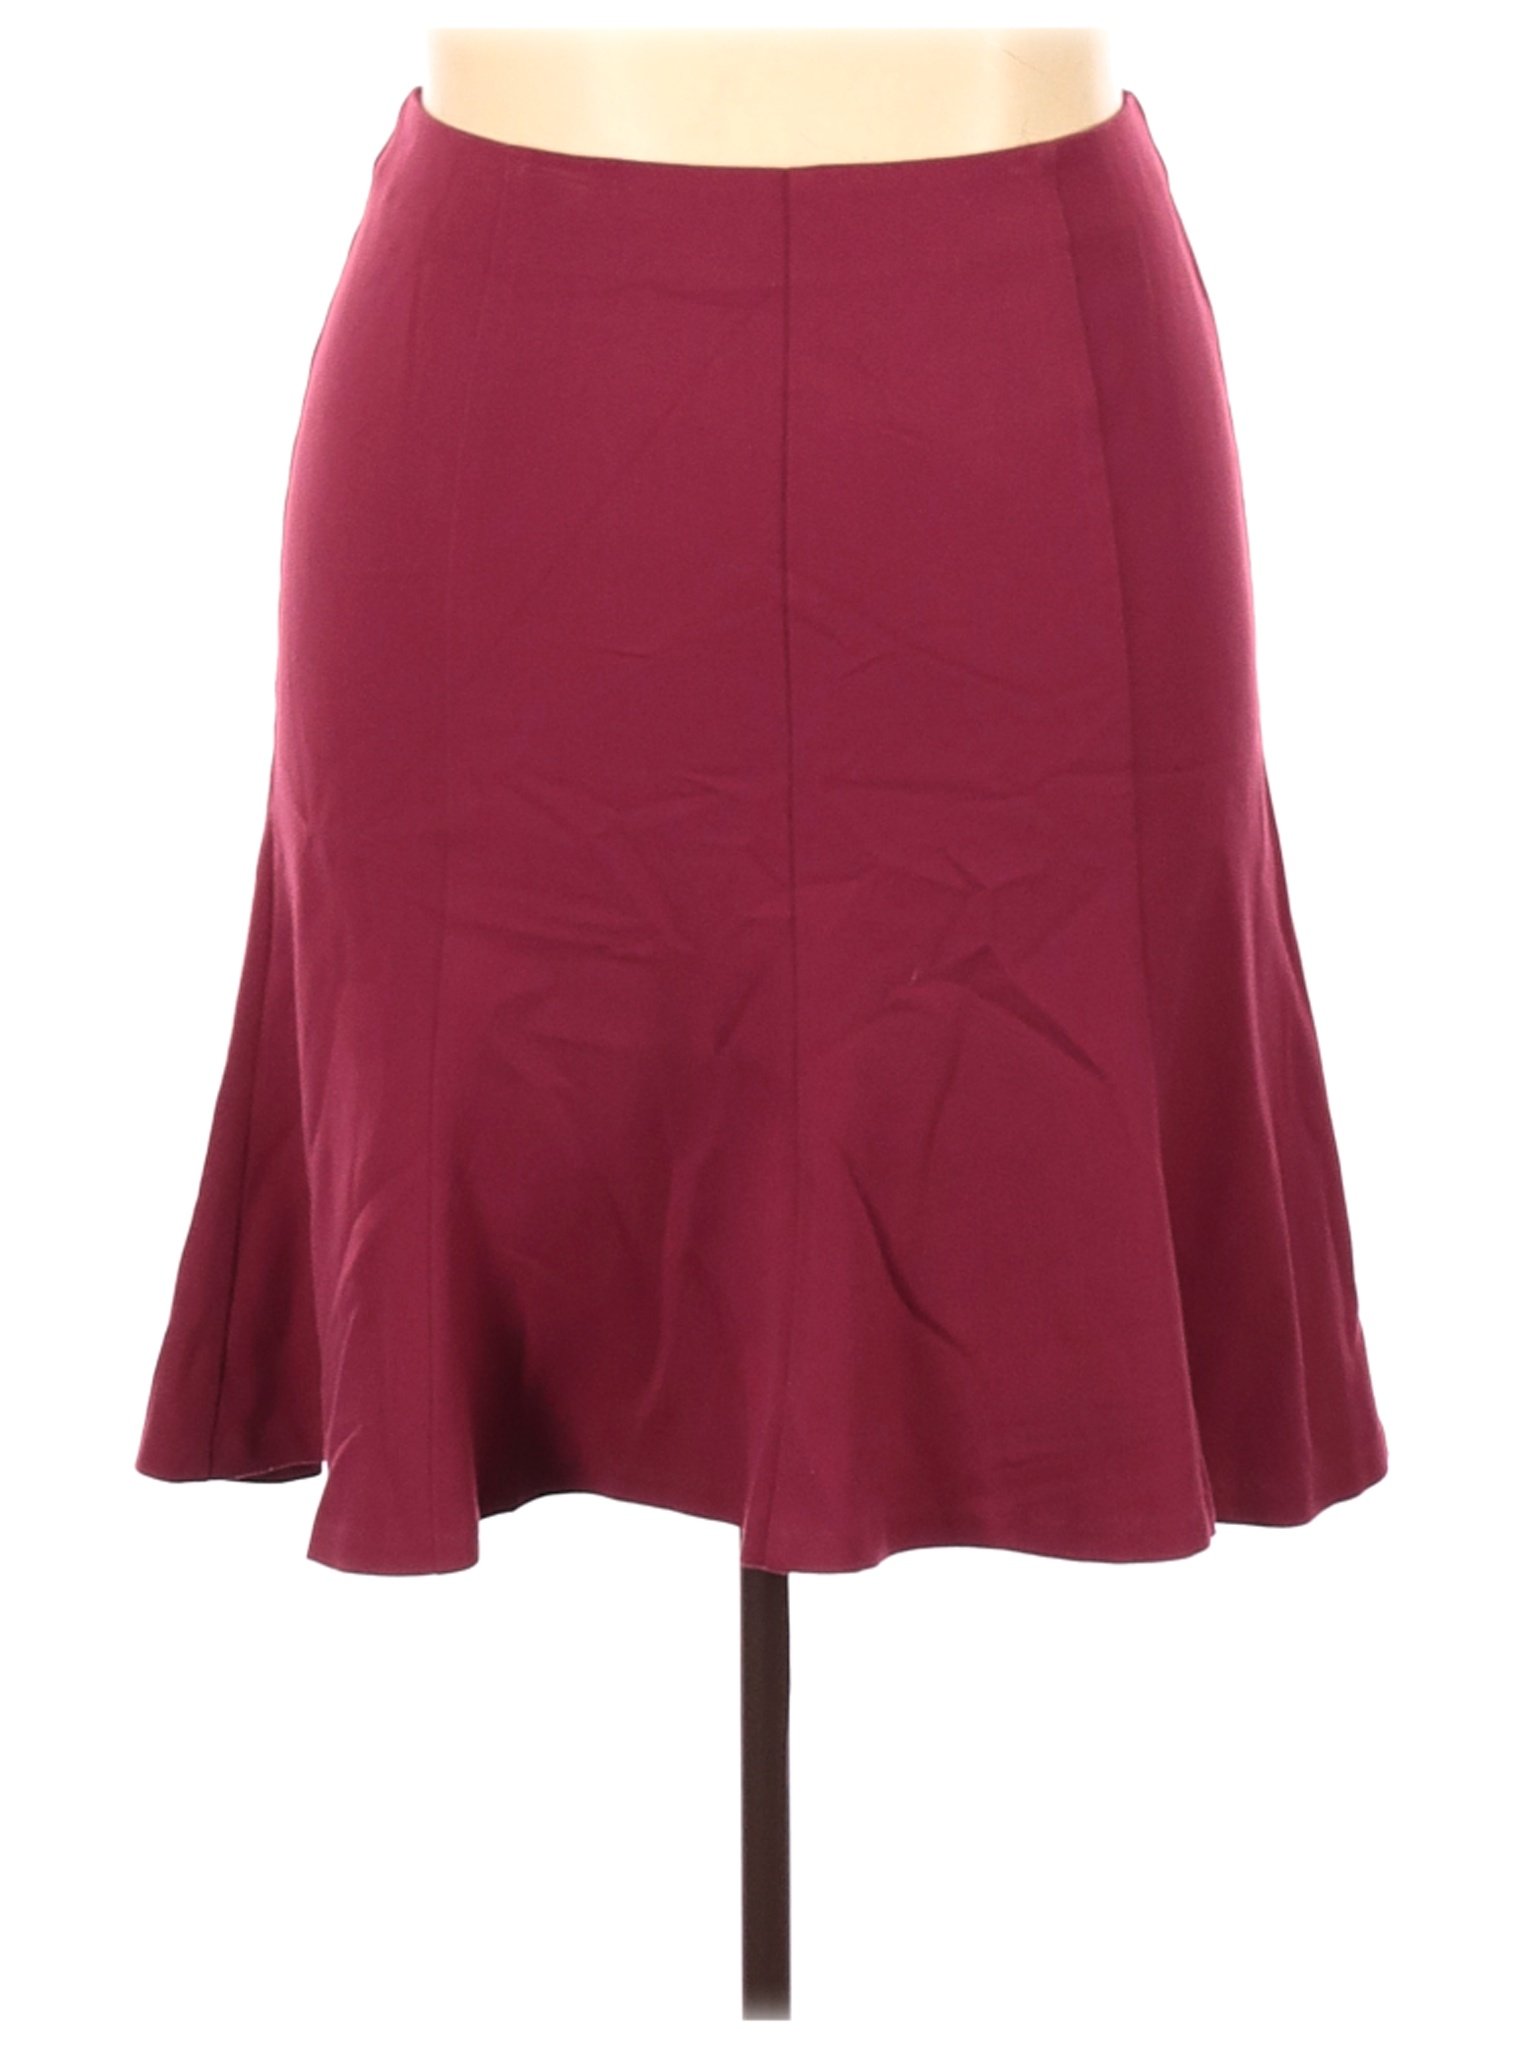 Sag Harbor Women Red Casual Skirt 16 | eBay